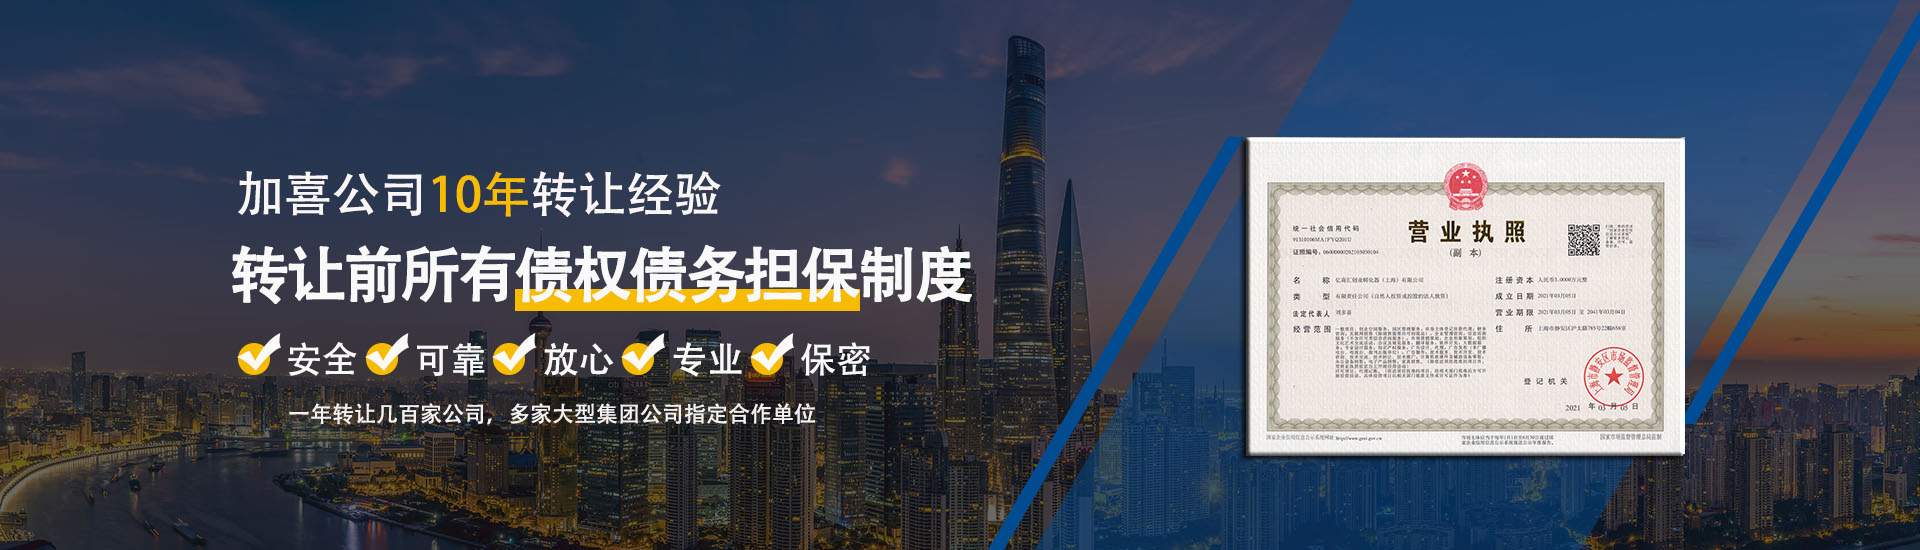 上海公司转让网-贸易/实业/科技/文化传播/传媒/广告公司转让网